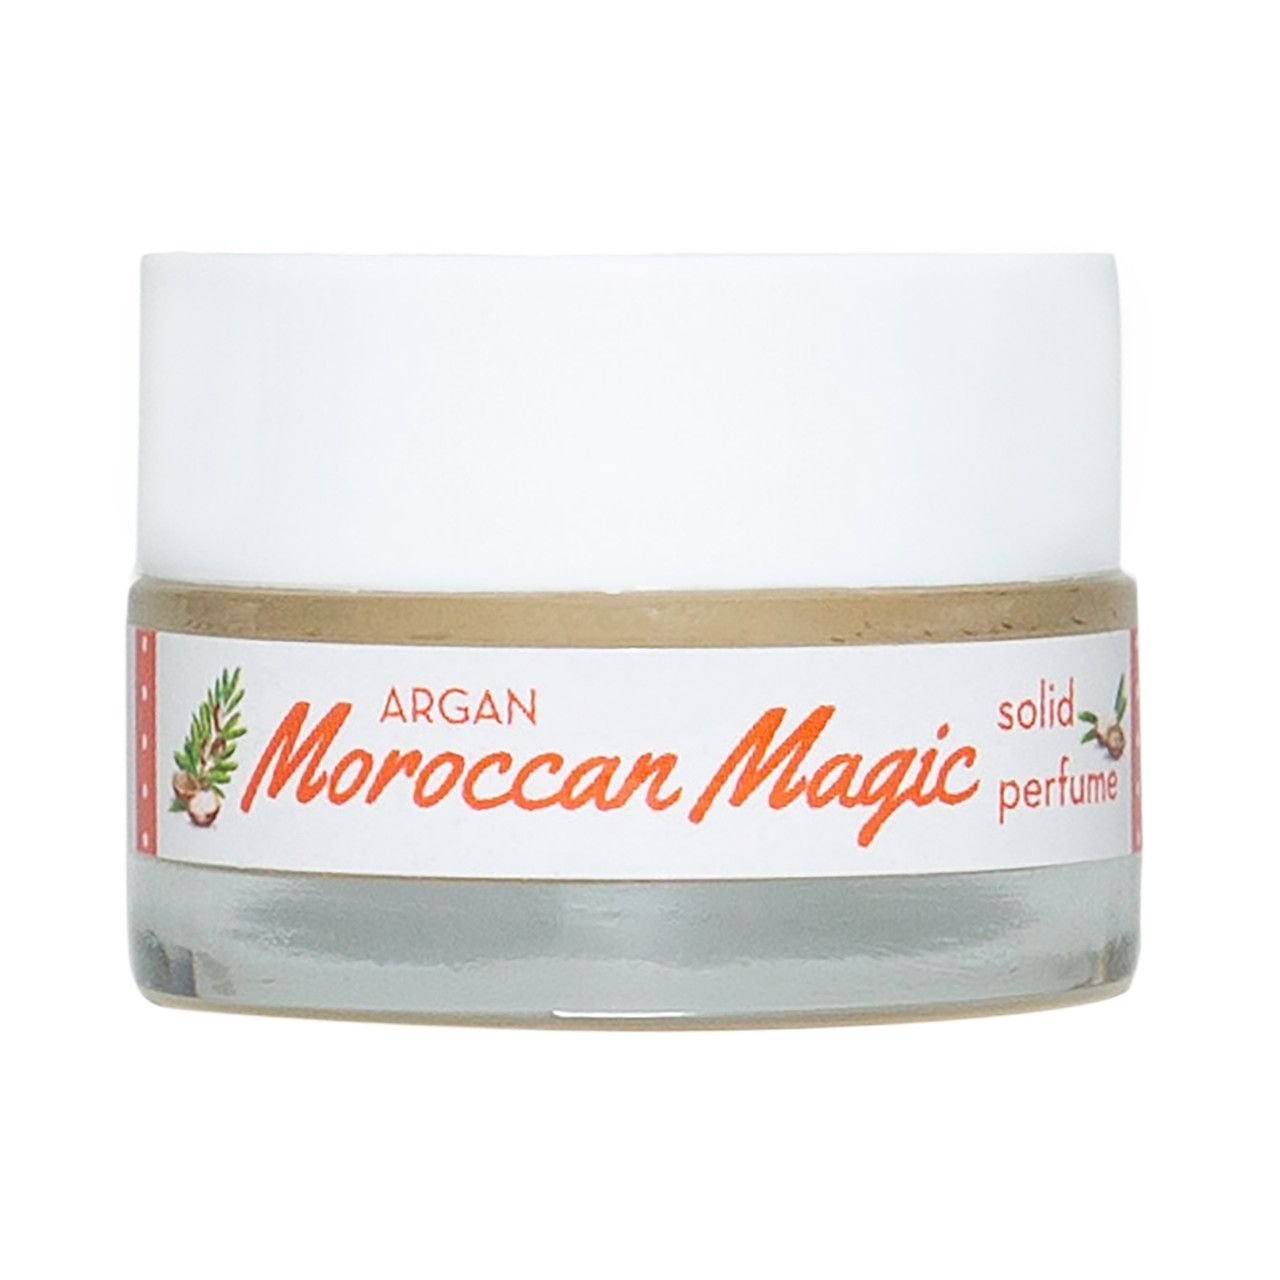 Argan Moroccan Magic Solid Perfume | Naples Soap Company